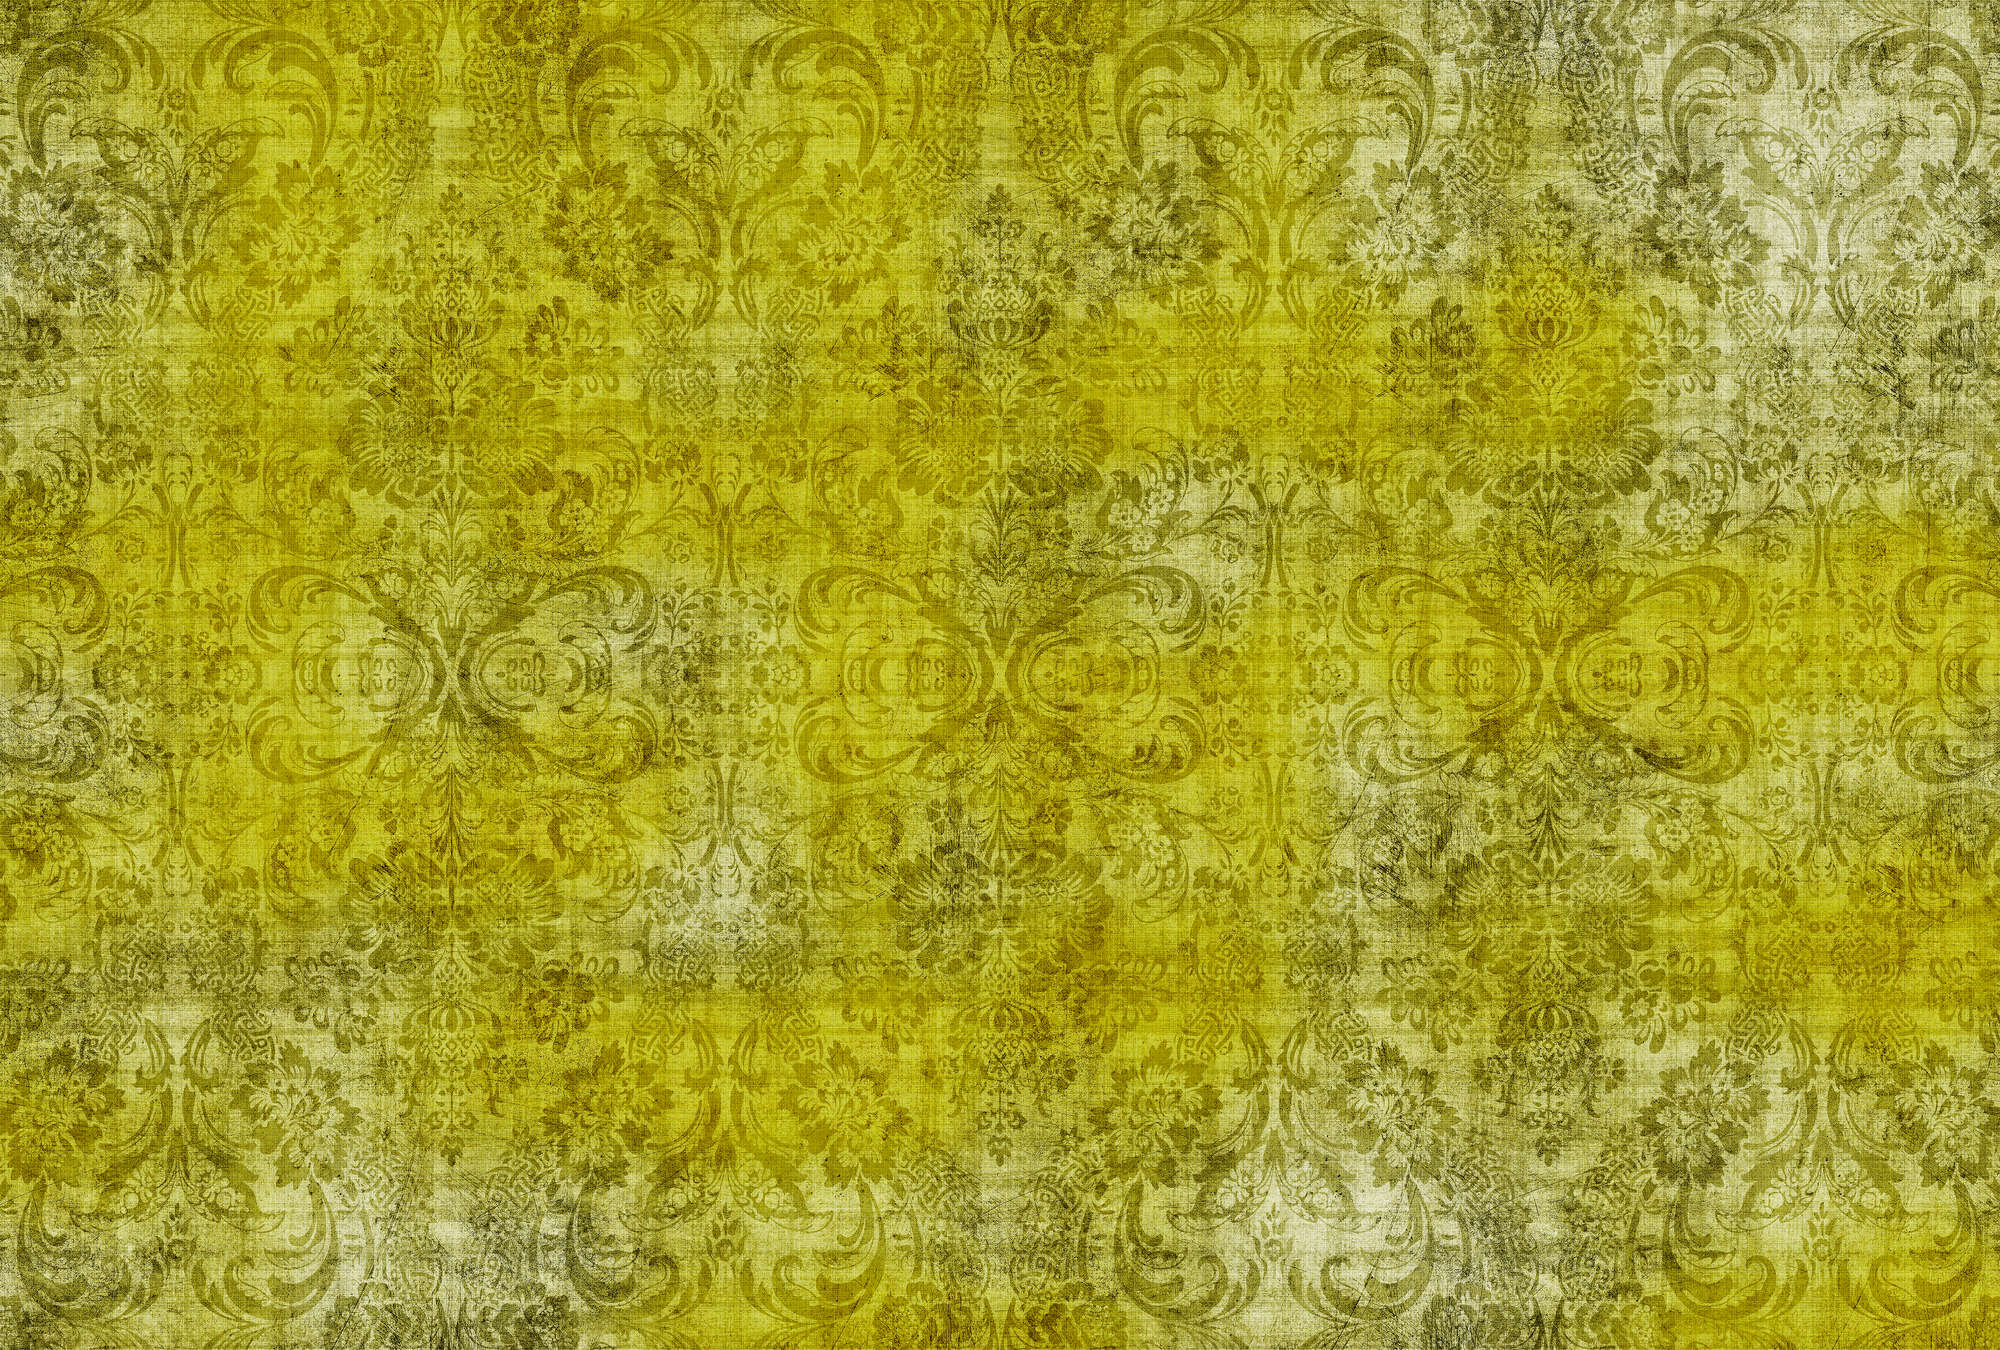             Damasco antiguo 1 - Ornamentos sobre papel pintado fotográfico moteado amarillo en estructura de lino natural - Amarillo | Tela no tejida lisa de calidad superior
        